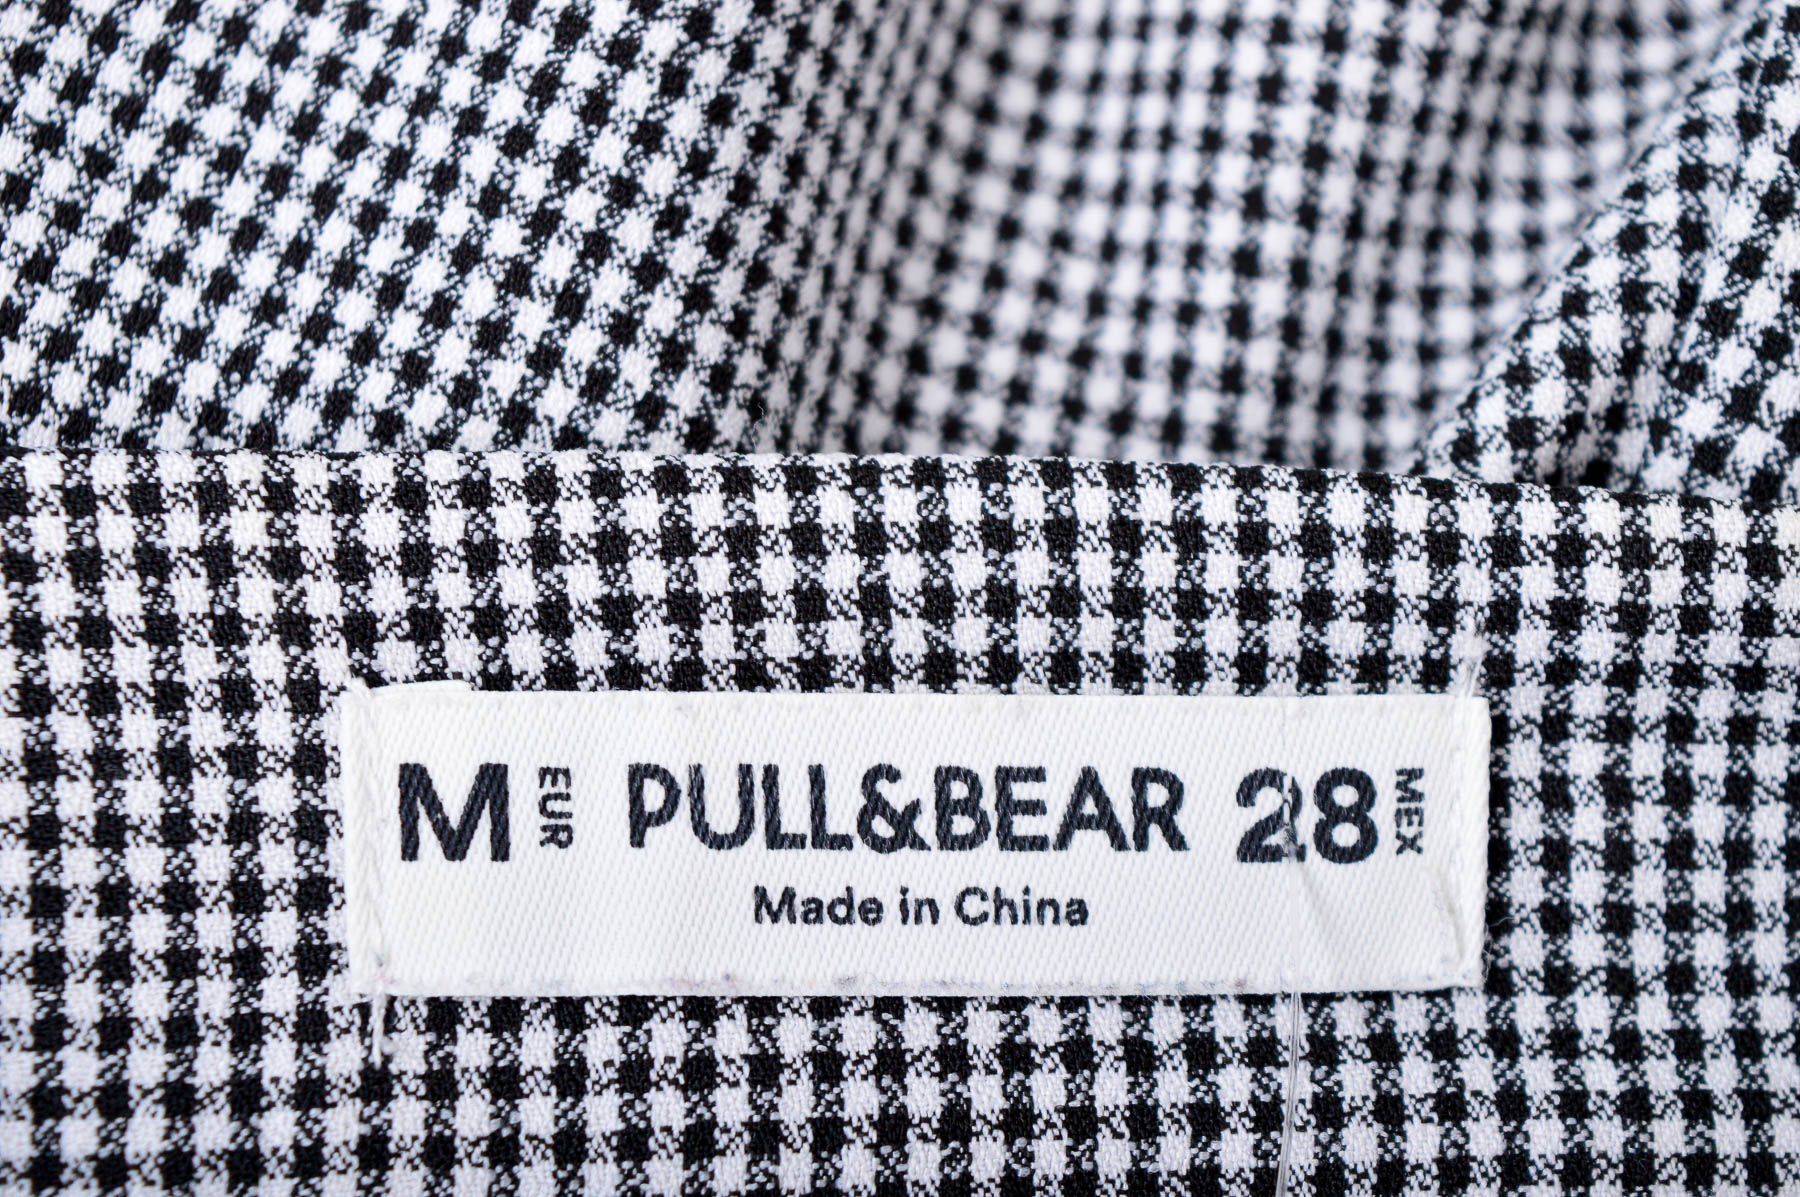 Female shorts - Pull & Bear - 2